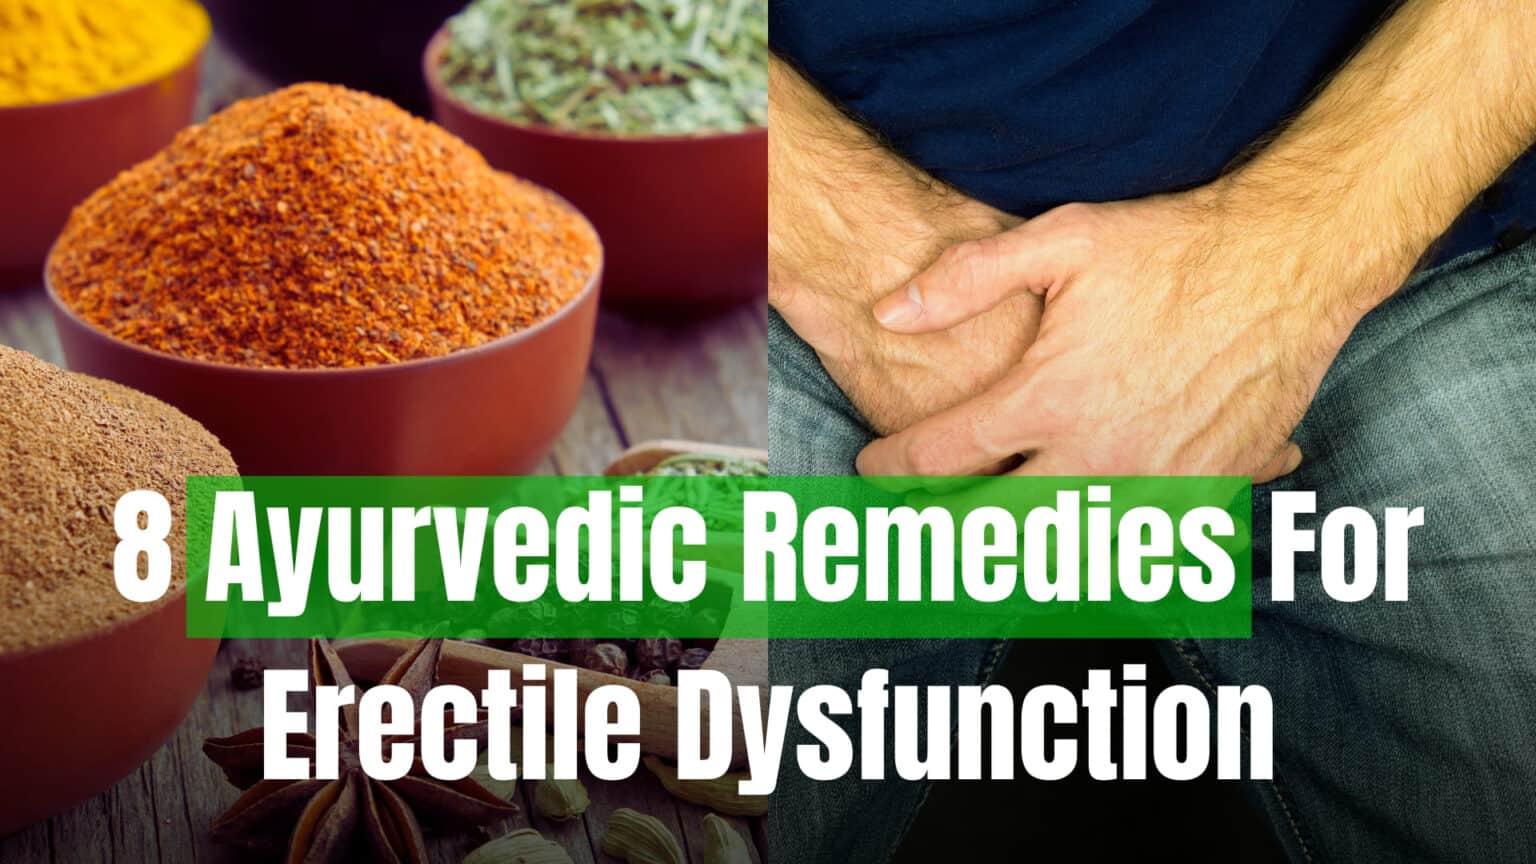 * Ayurvedic Remedies For Erectile Dysfunction